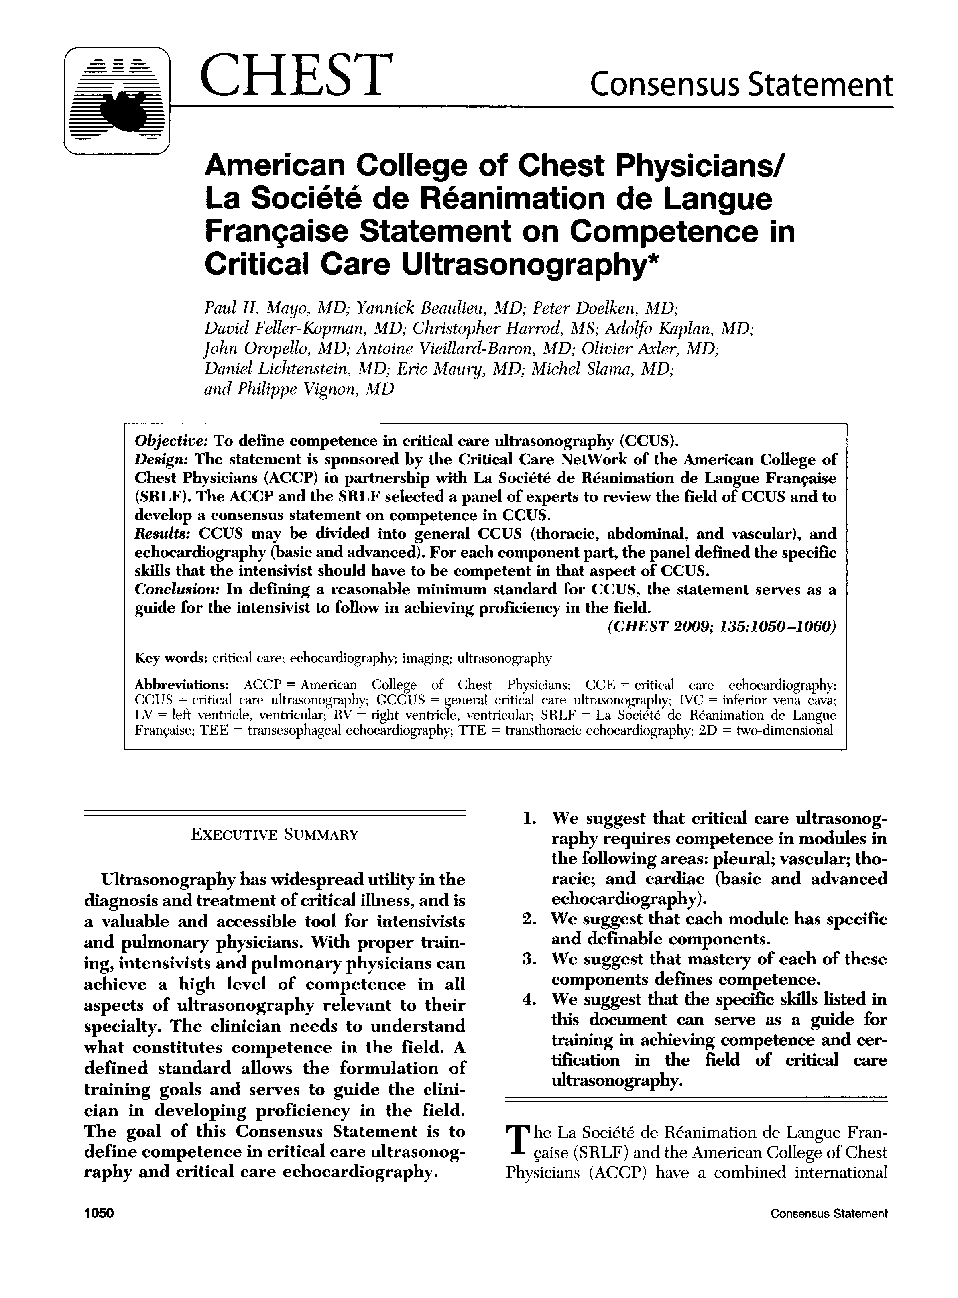 American College of Chest Physicians/La Société de Réanimation de Langue Française Statement on Competence in Critical Care Ultrasonography 